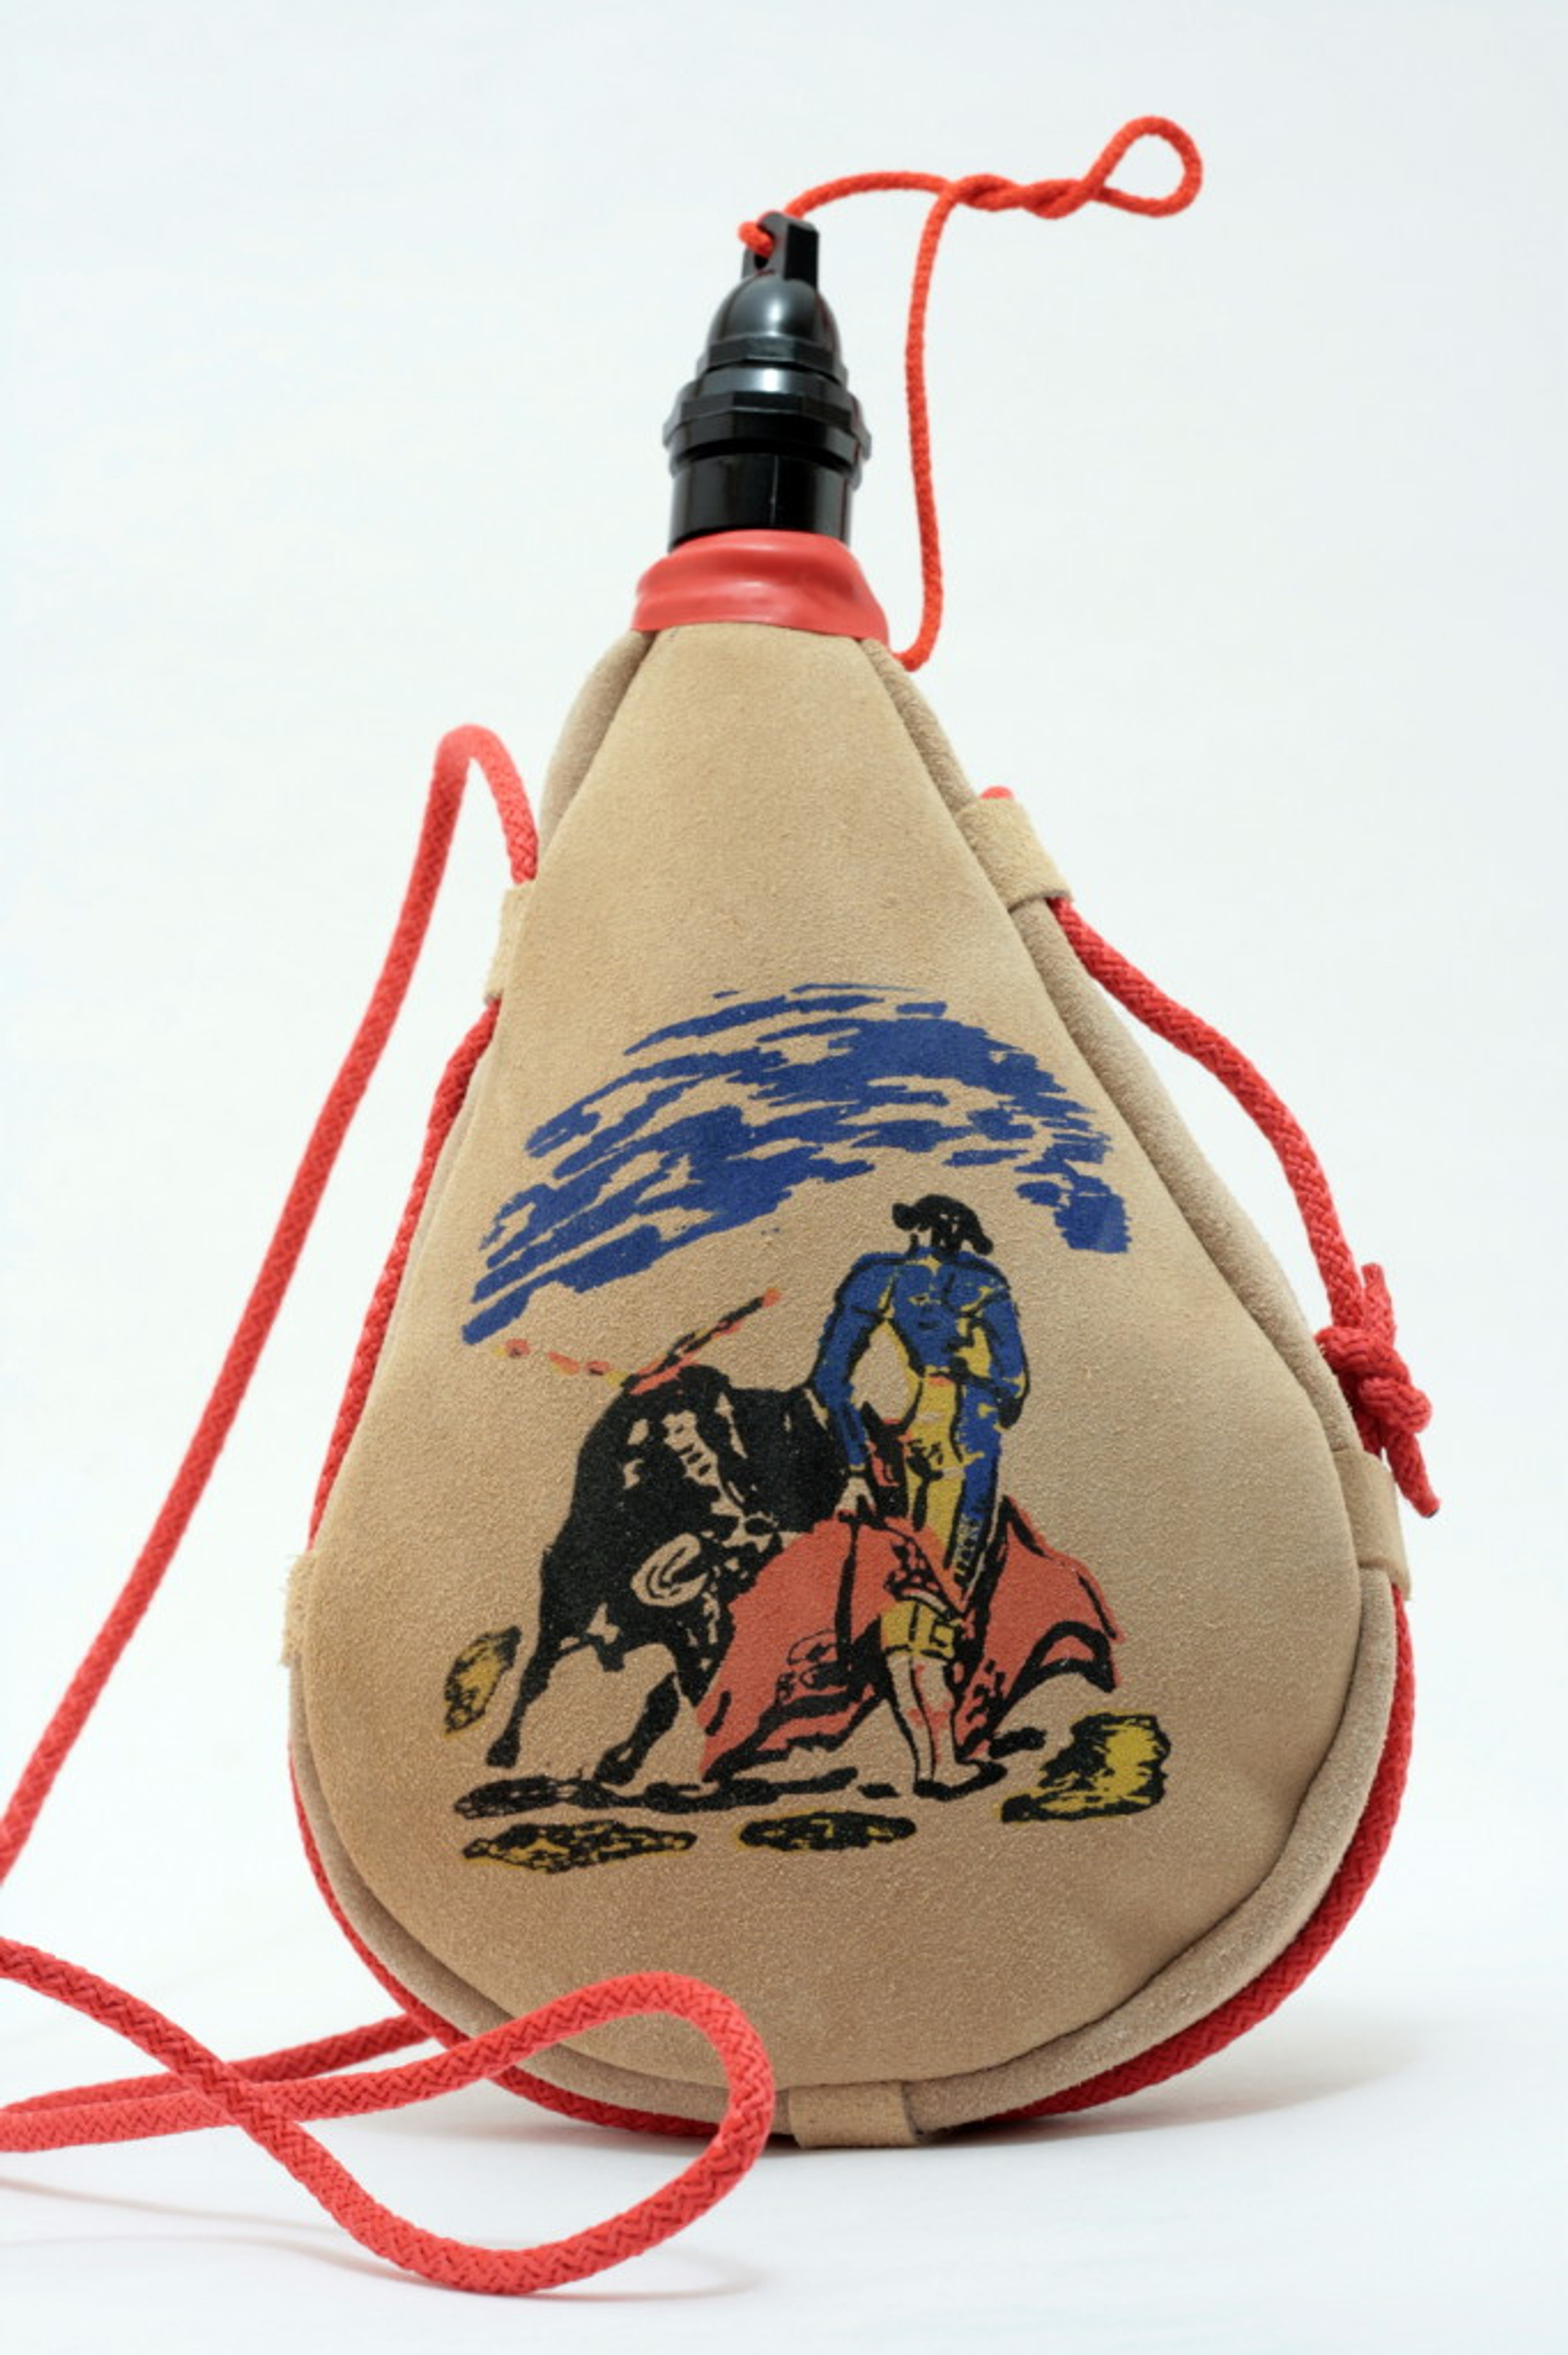 Spanish bota de vino 1l wineskin leather bag made in spain wine skin